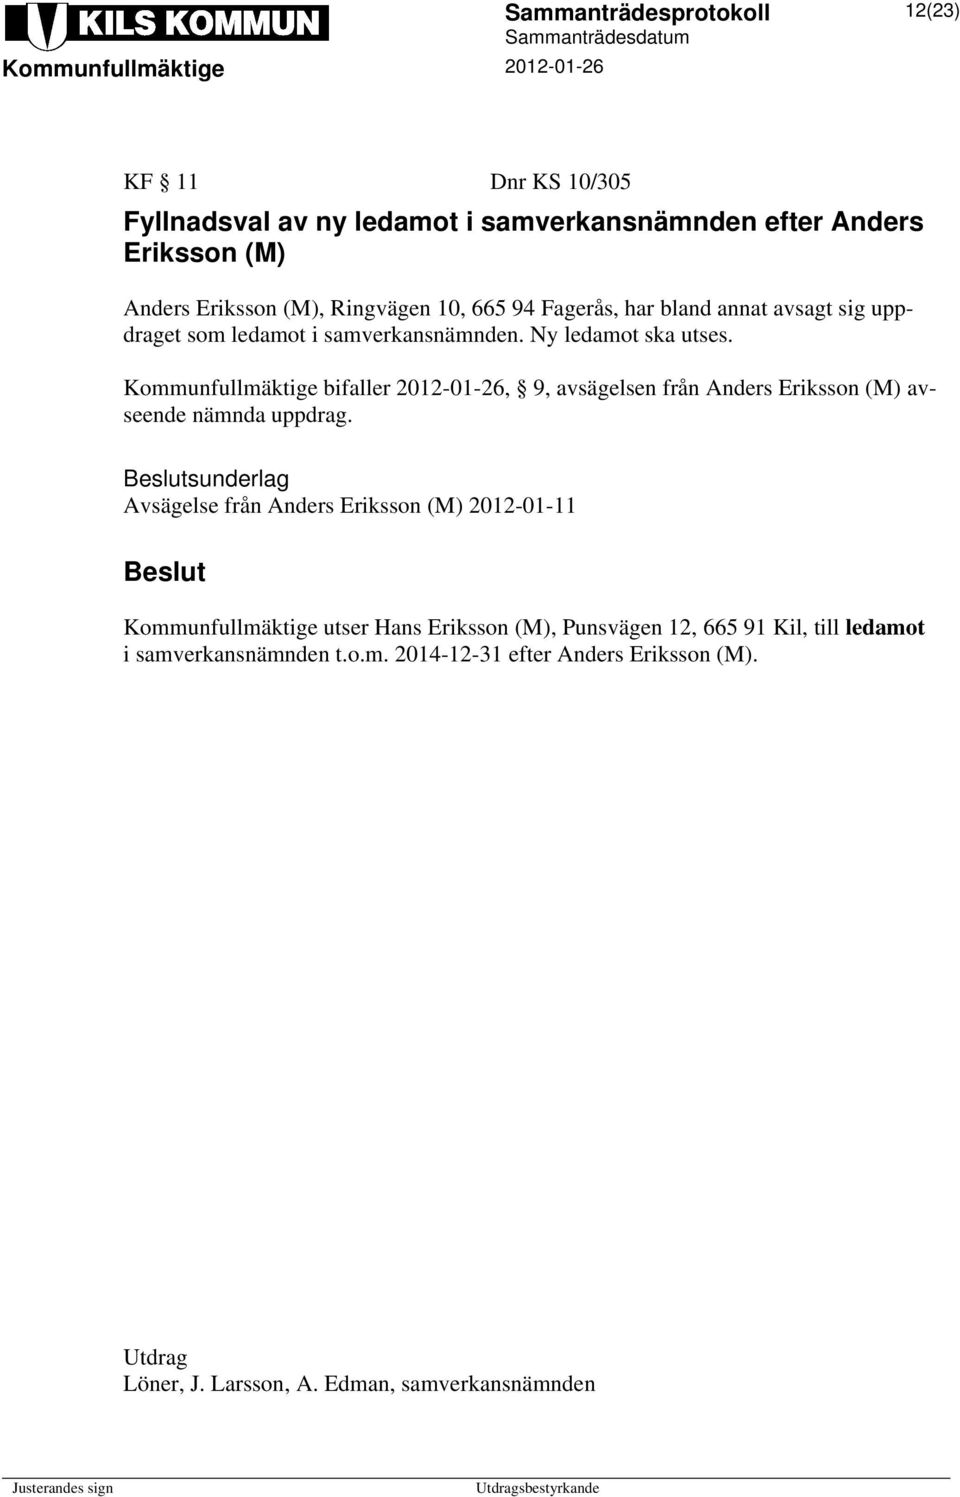 Kommunfullmäktige bifaller 2012-01-26, 9, avsägelsen från Anders Eriksson (M) avseende nämnda uppdrag.